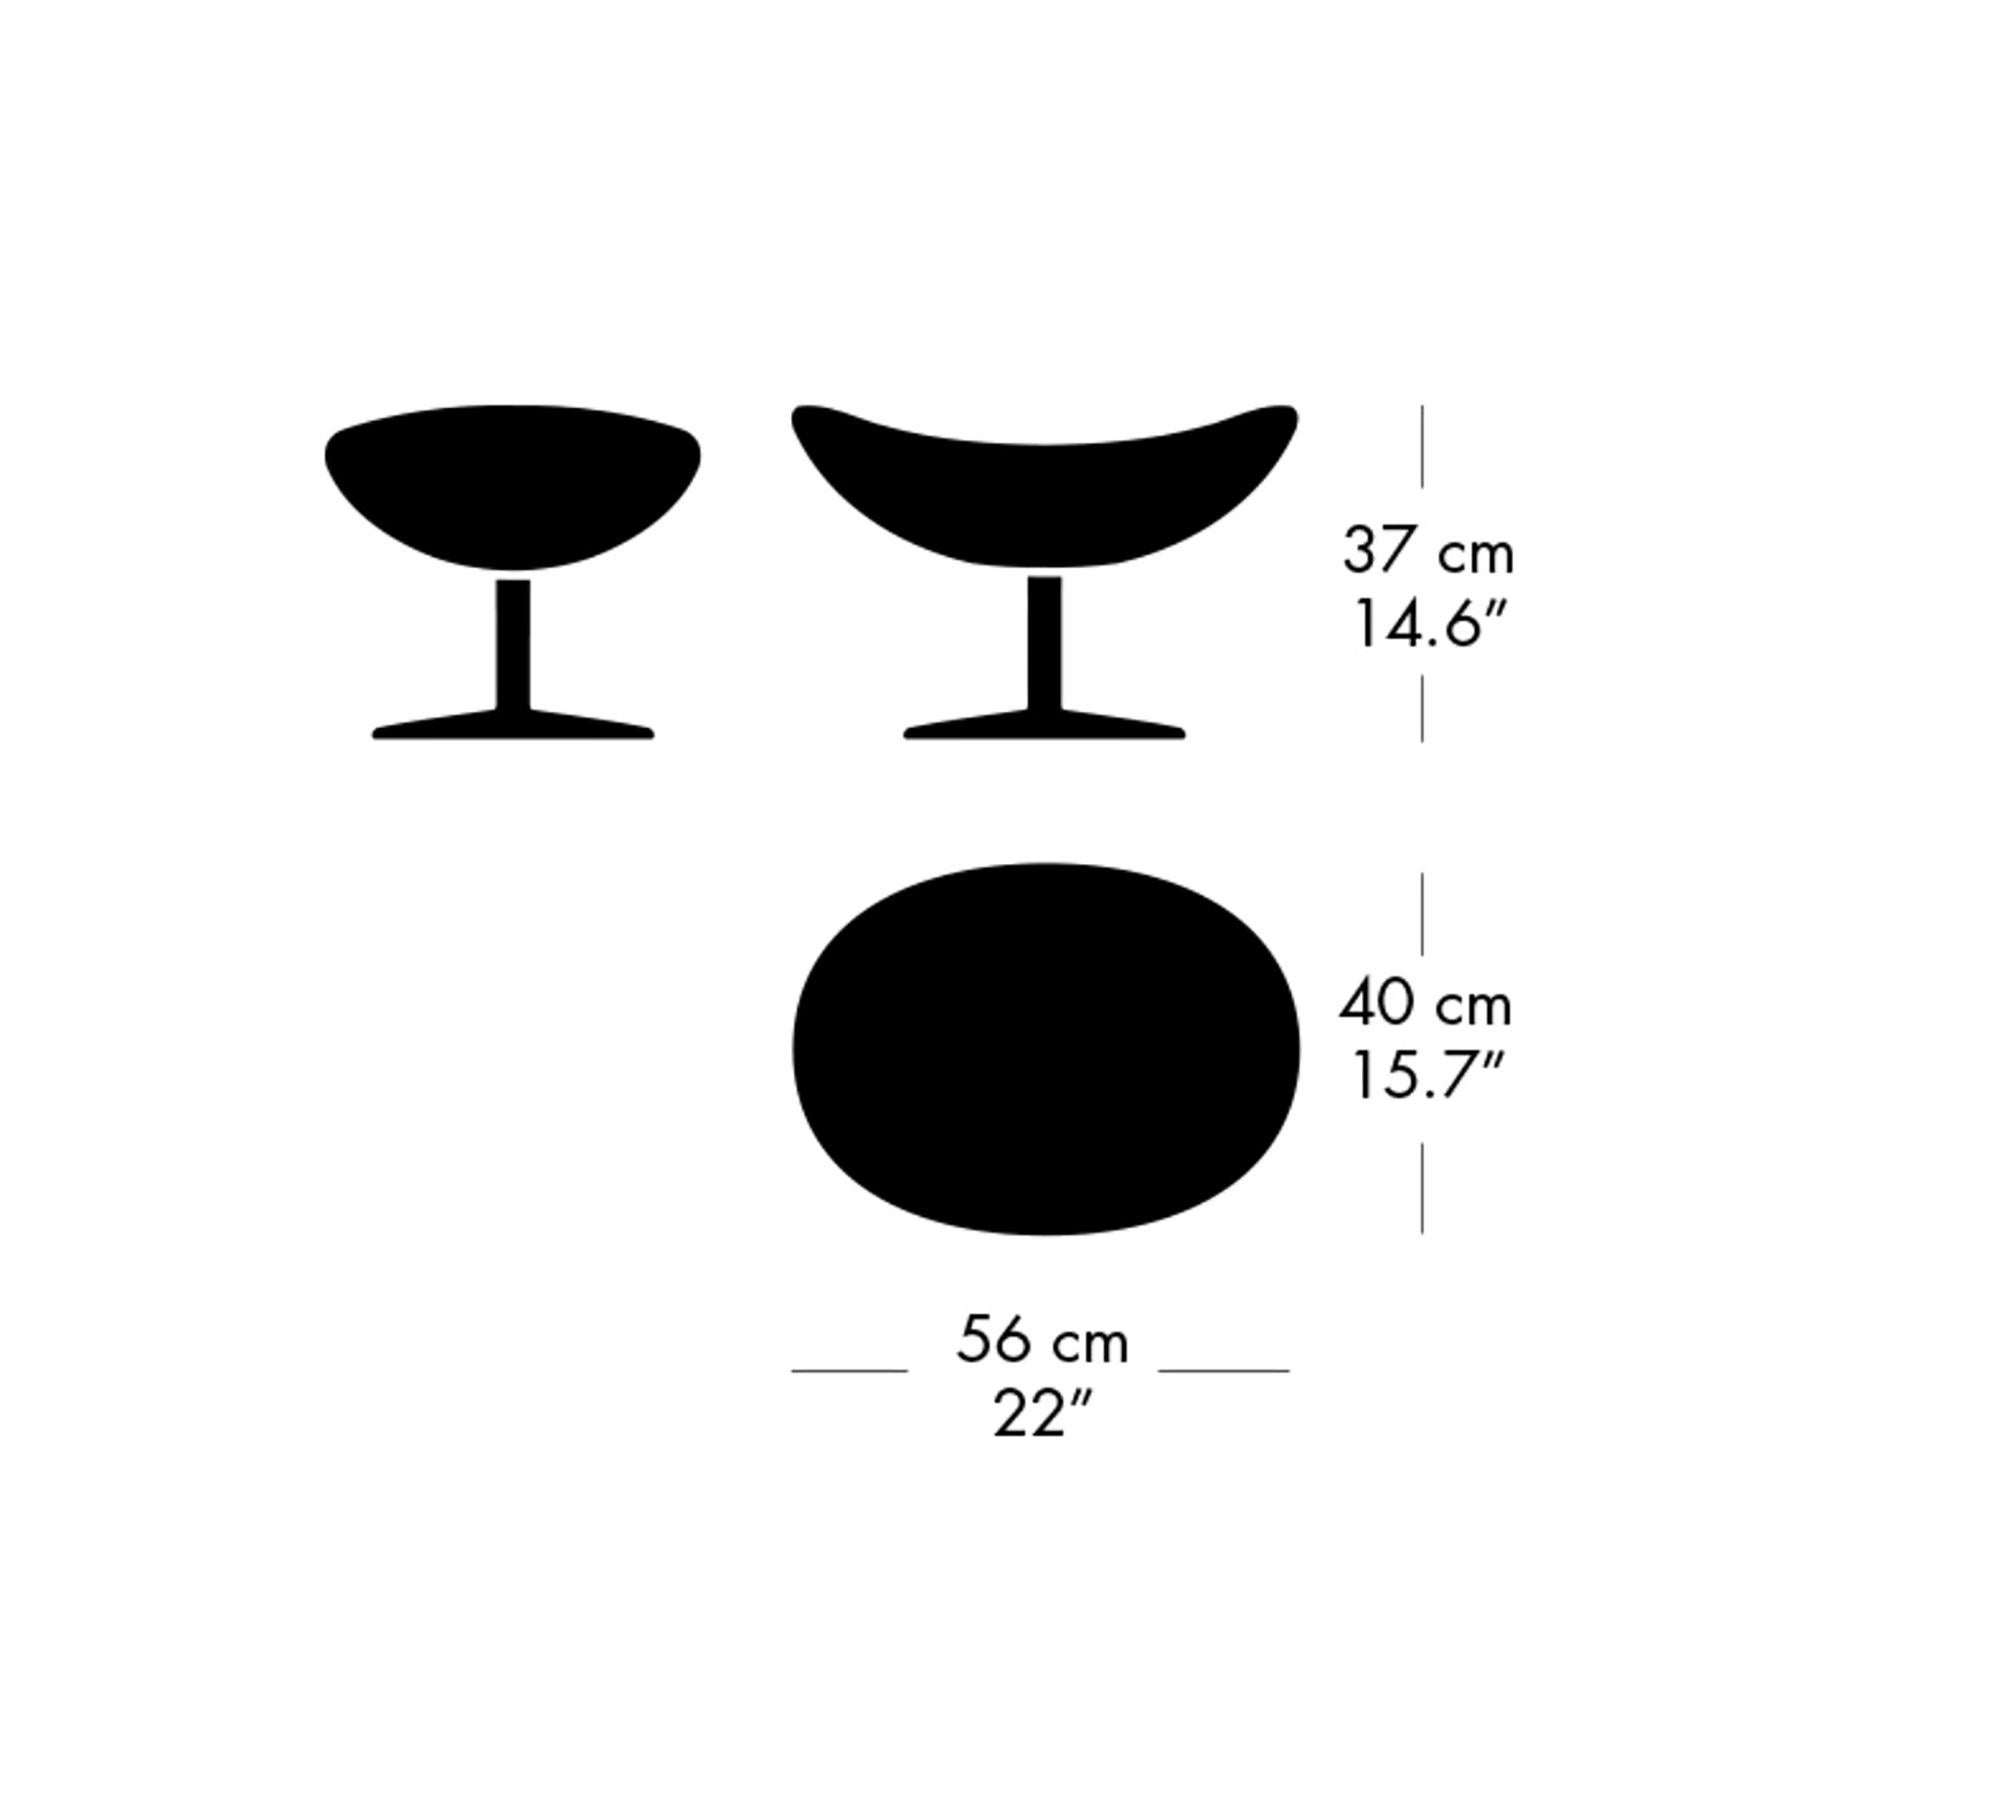 Arne Jacobsen 'Egg' Footstool for Fritz Hansen in Leather Upholstery (Cat. 4) For Sale 5